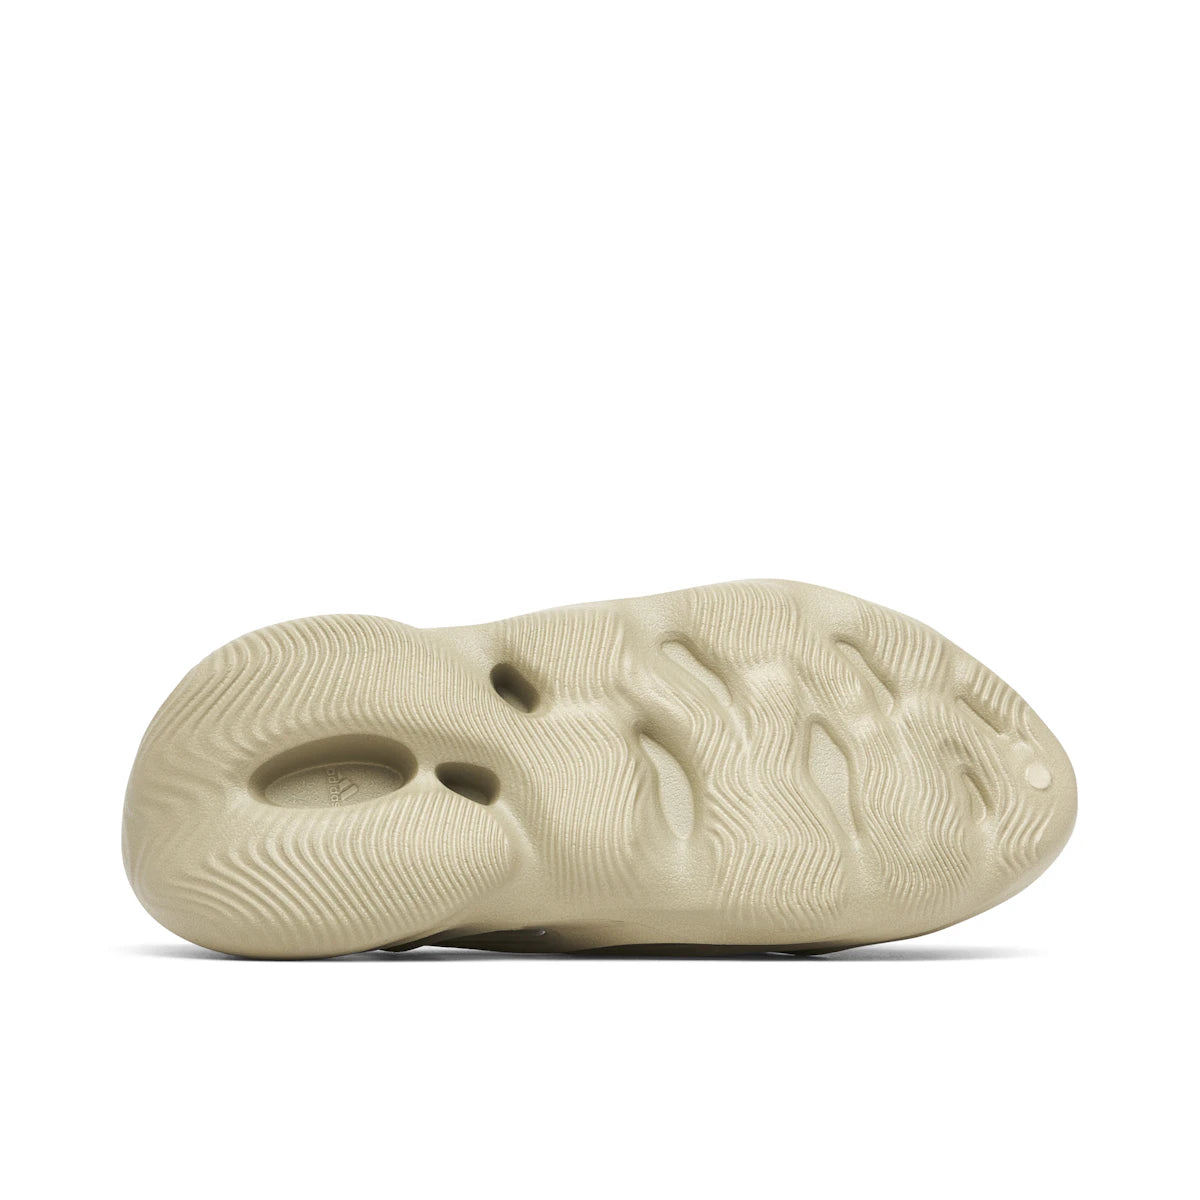 adidas Yeezy Foam RNR Stone Salt by Yeezy from £124.00